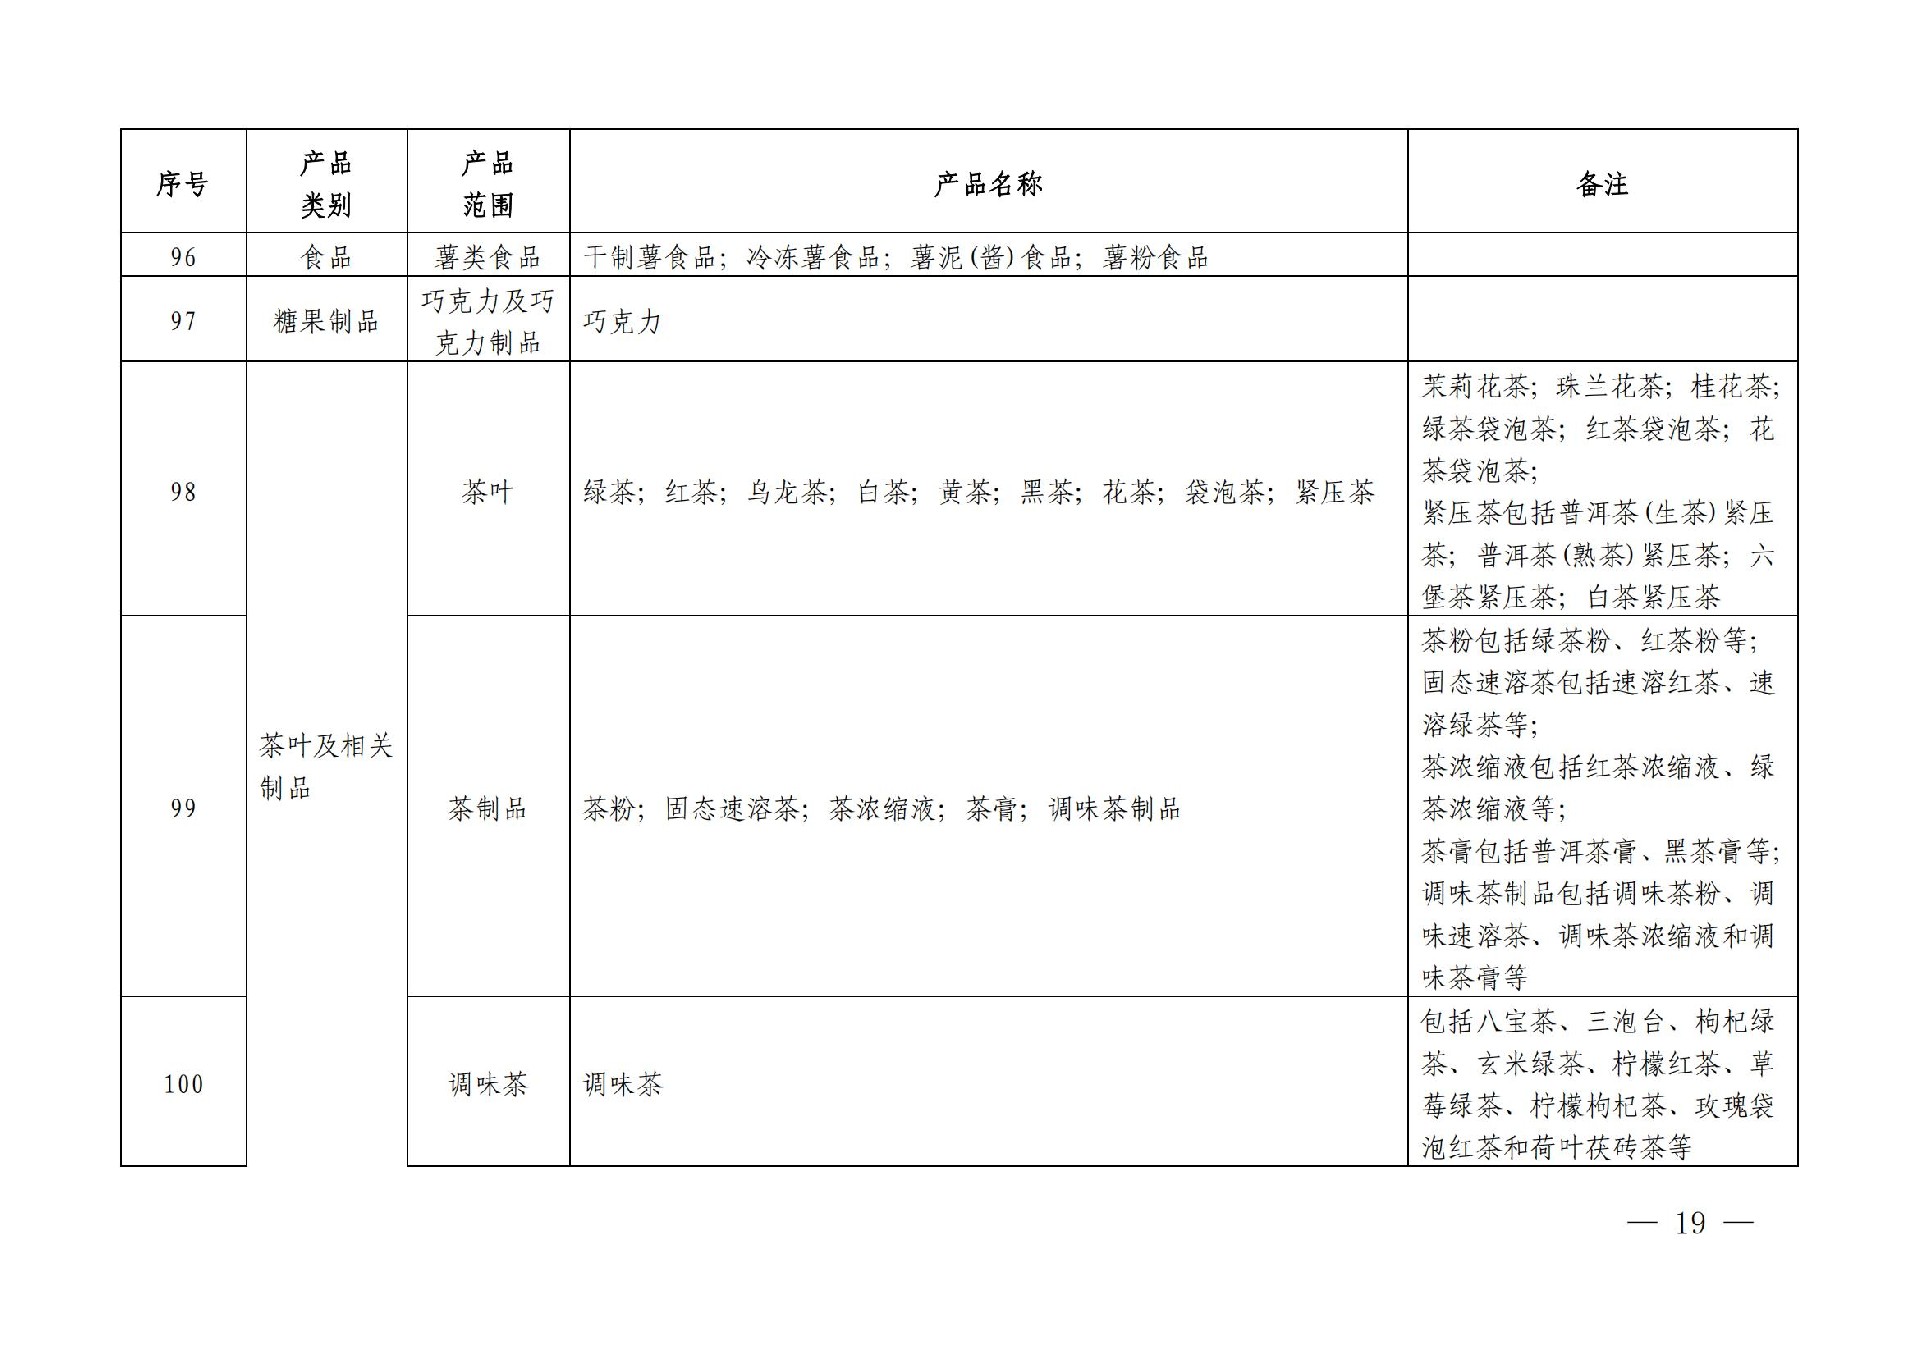 有机产品认证目录【认监委2019年第22号公告】(1)_18.jpg